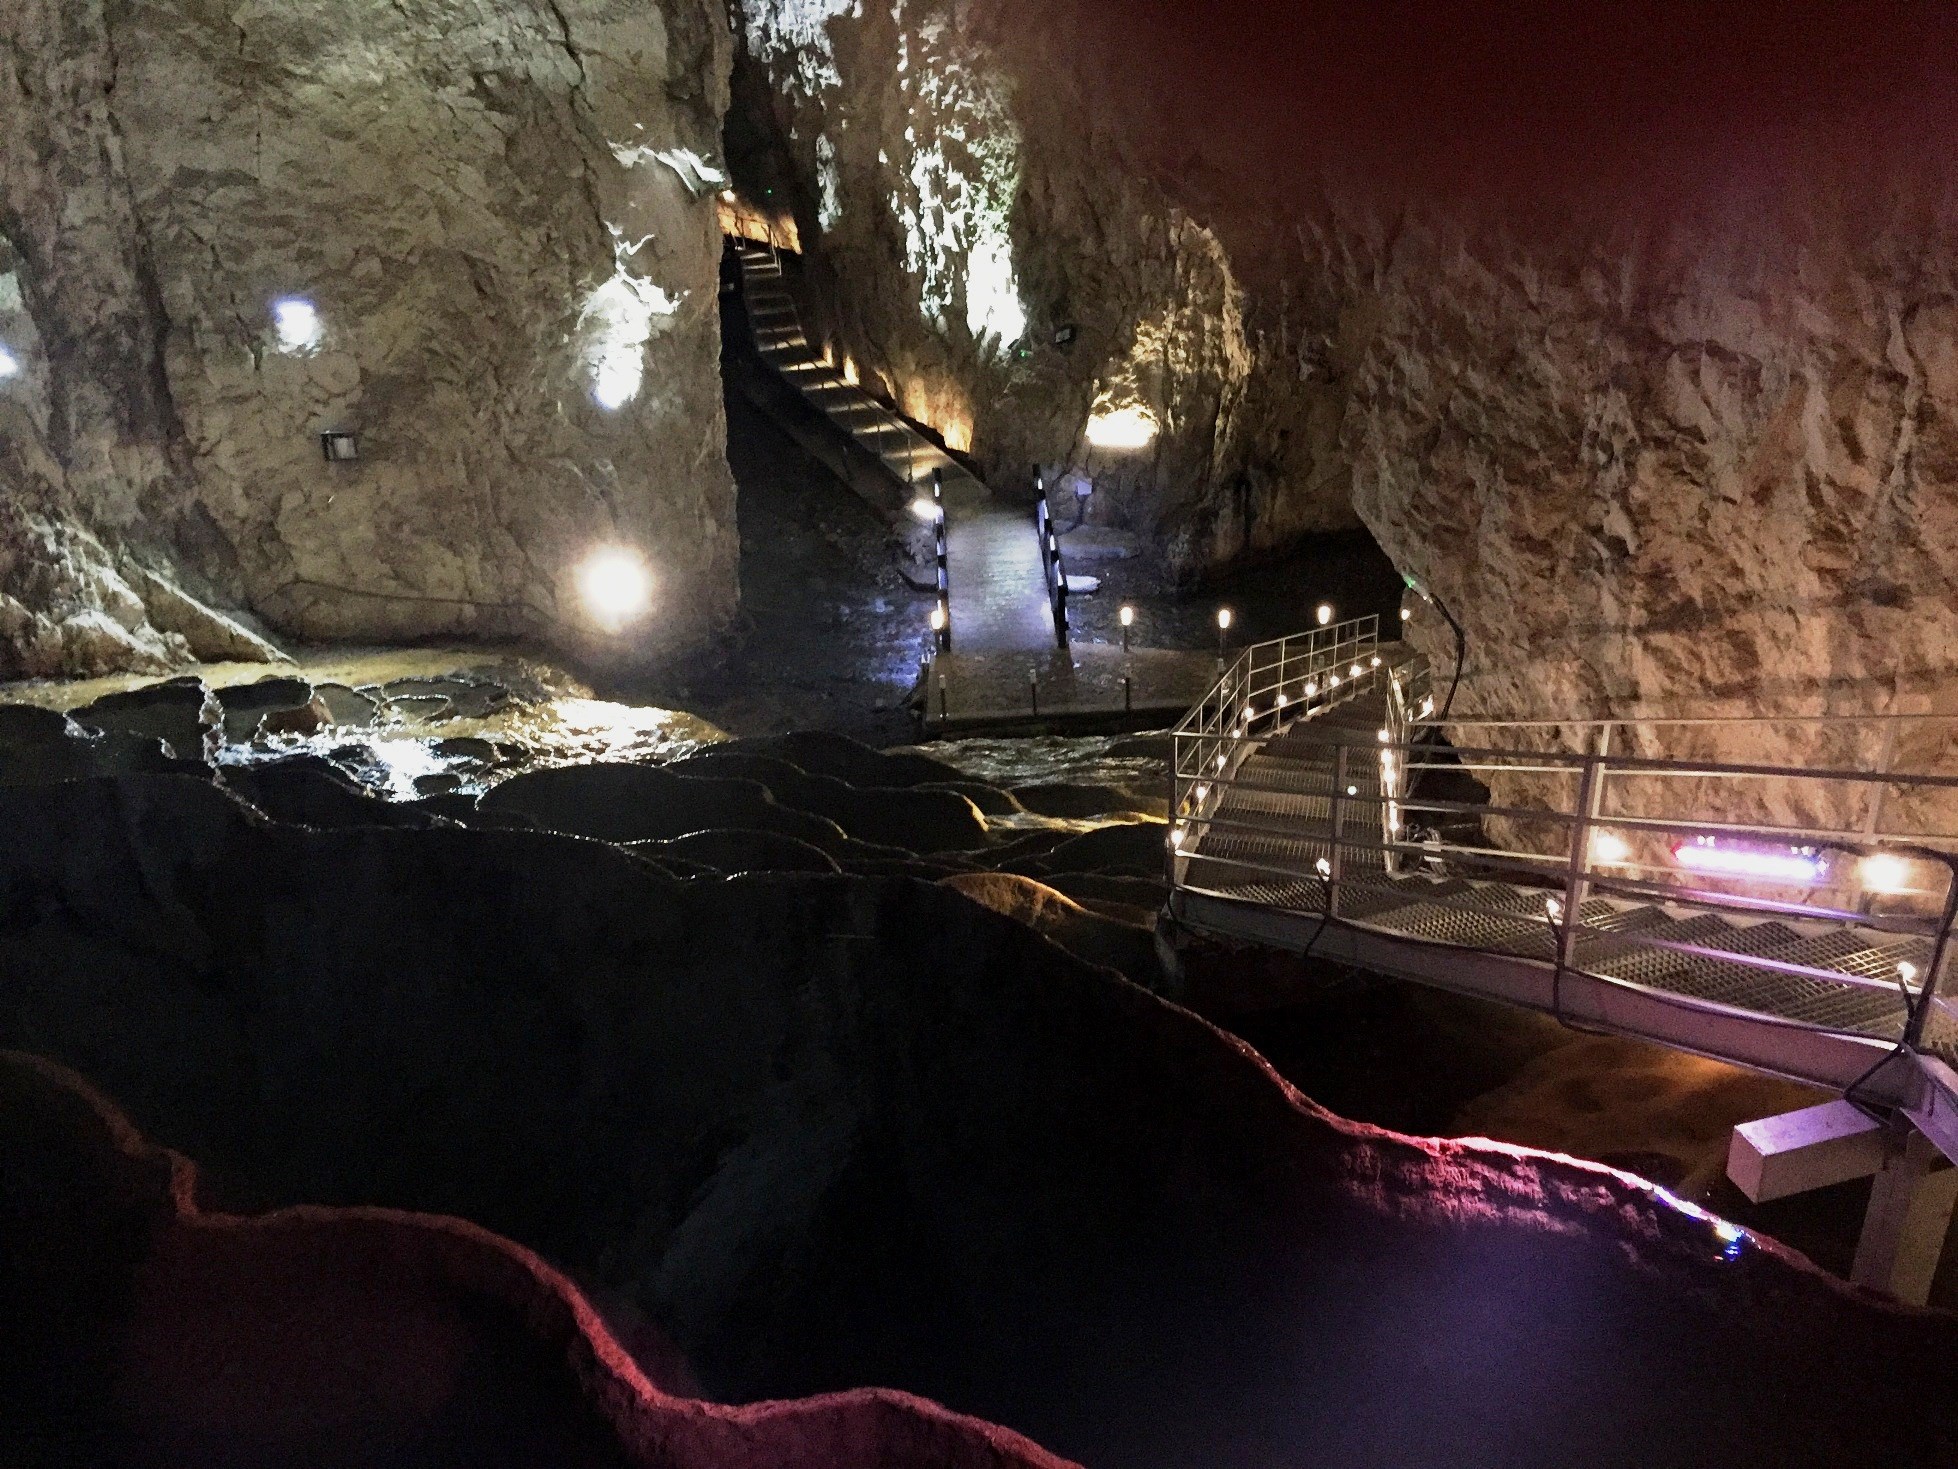 Уникальная пещера Стопича с подземной рекой, водопадом и каскадом наполненных водой травертин. Недалеко от Златибора